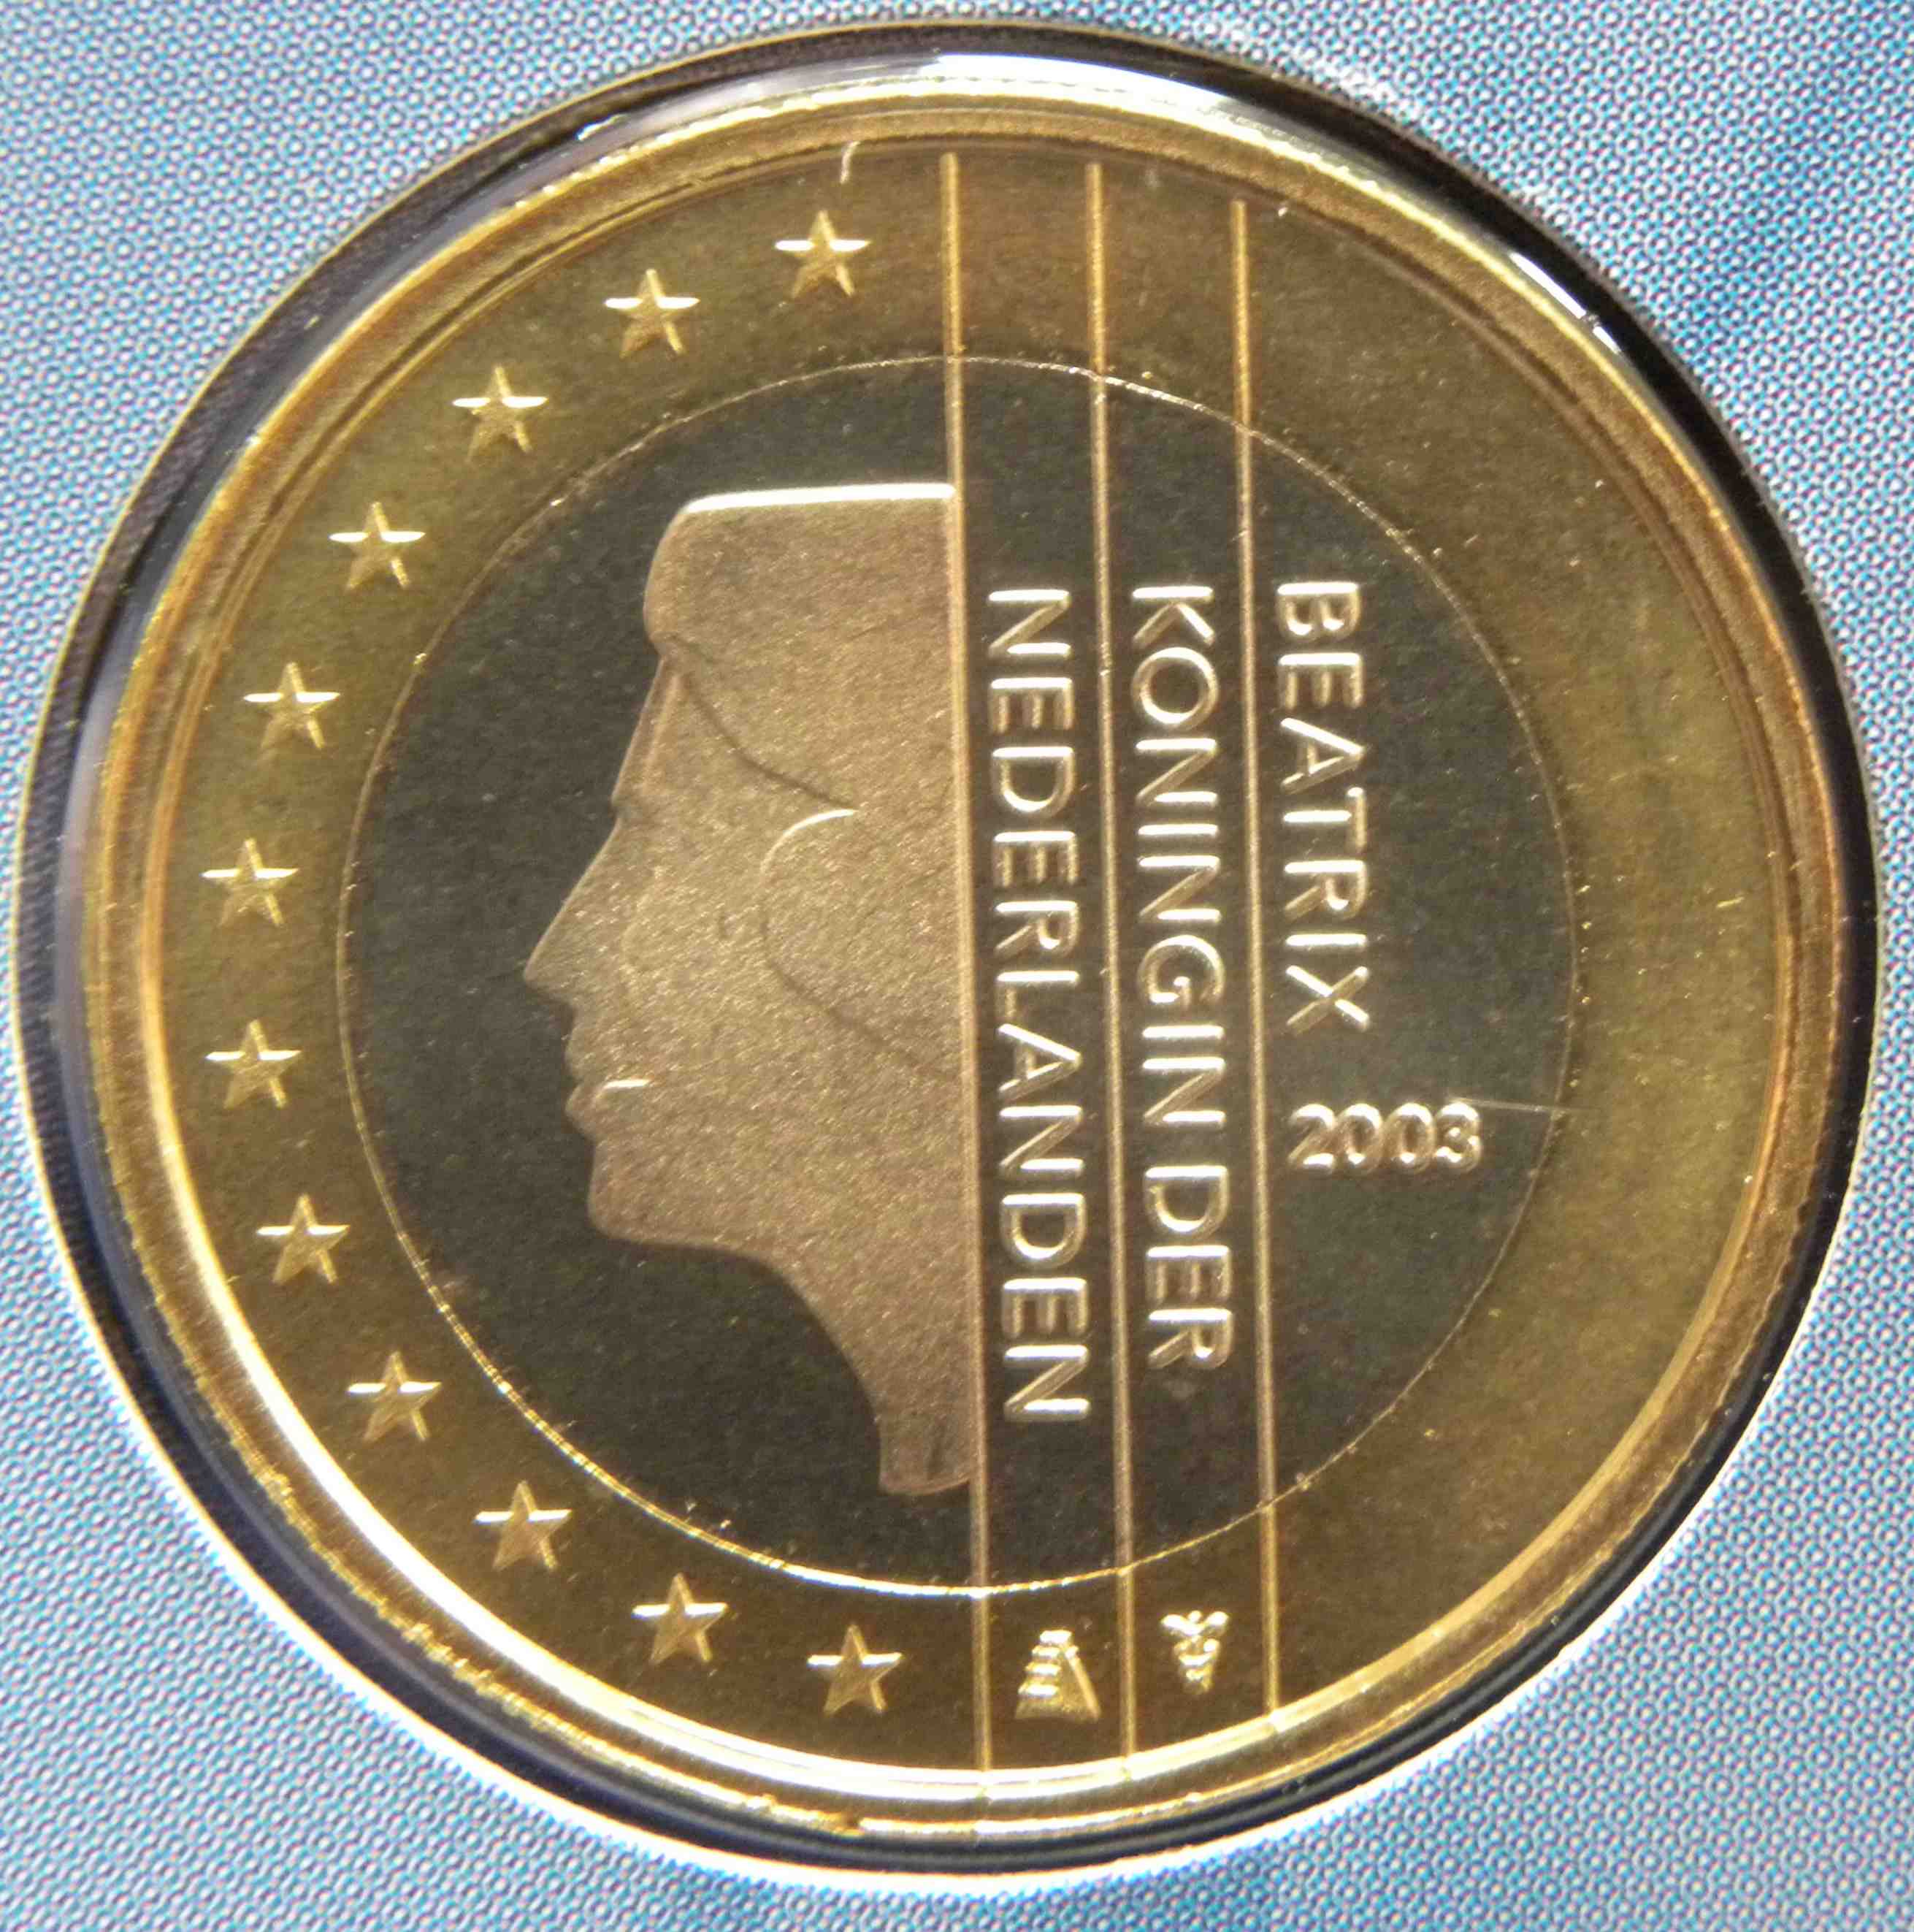 2003 1 euro coin value